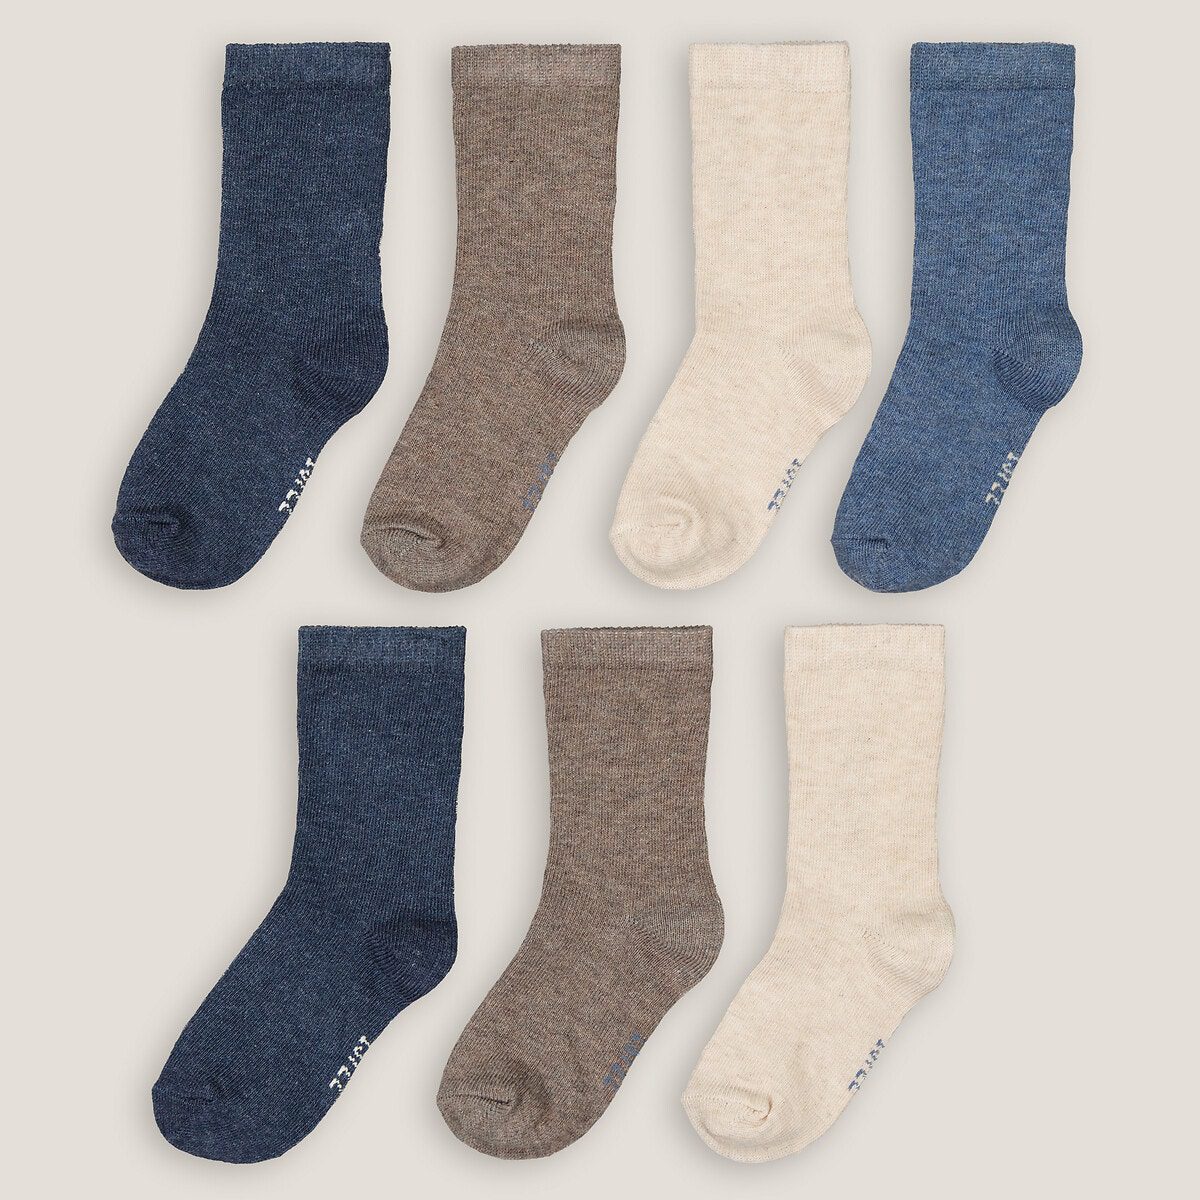 Σετ 7 ζευγάρια κάλτσες Διαφορα Χρωματα